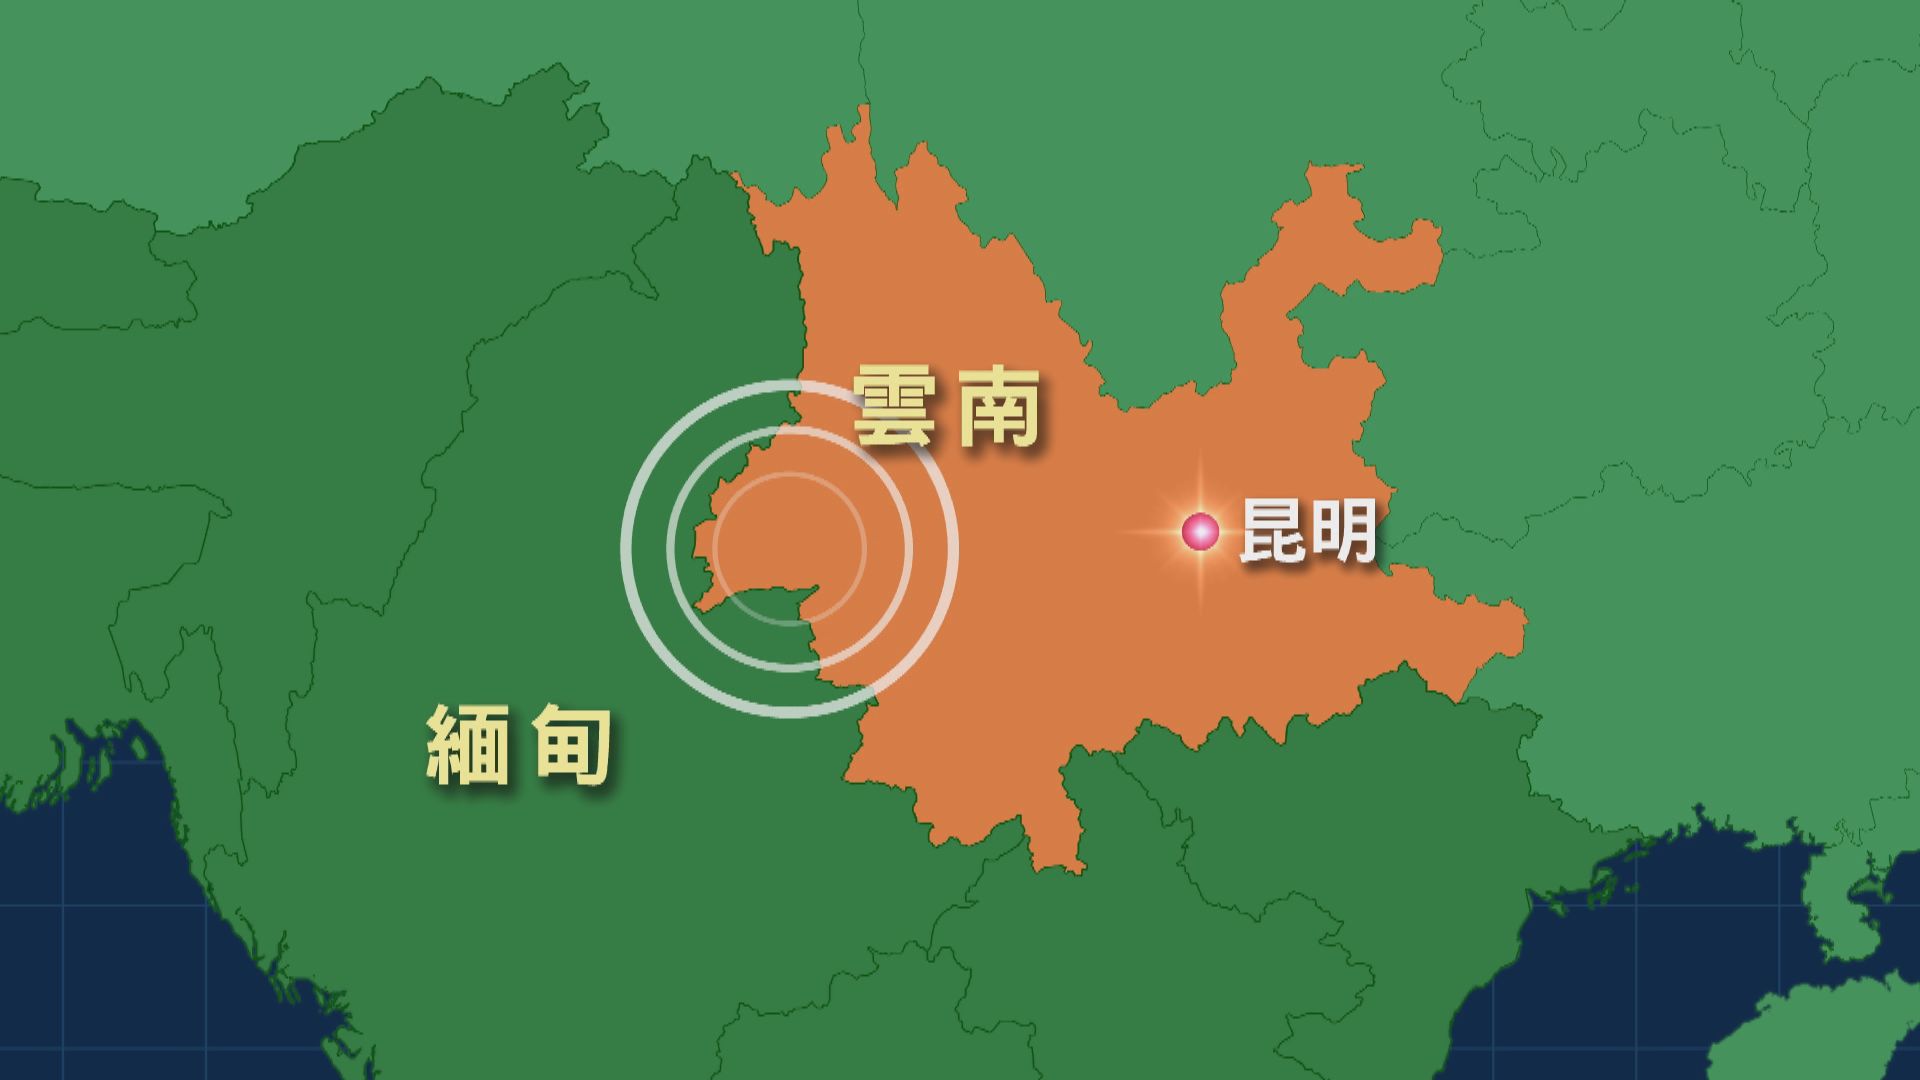 雲南芒市發生5級地震 未有人員傷亡報告